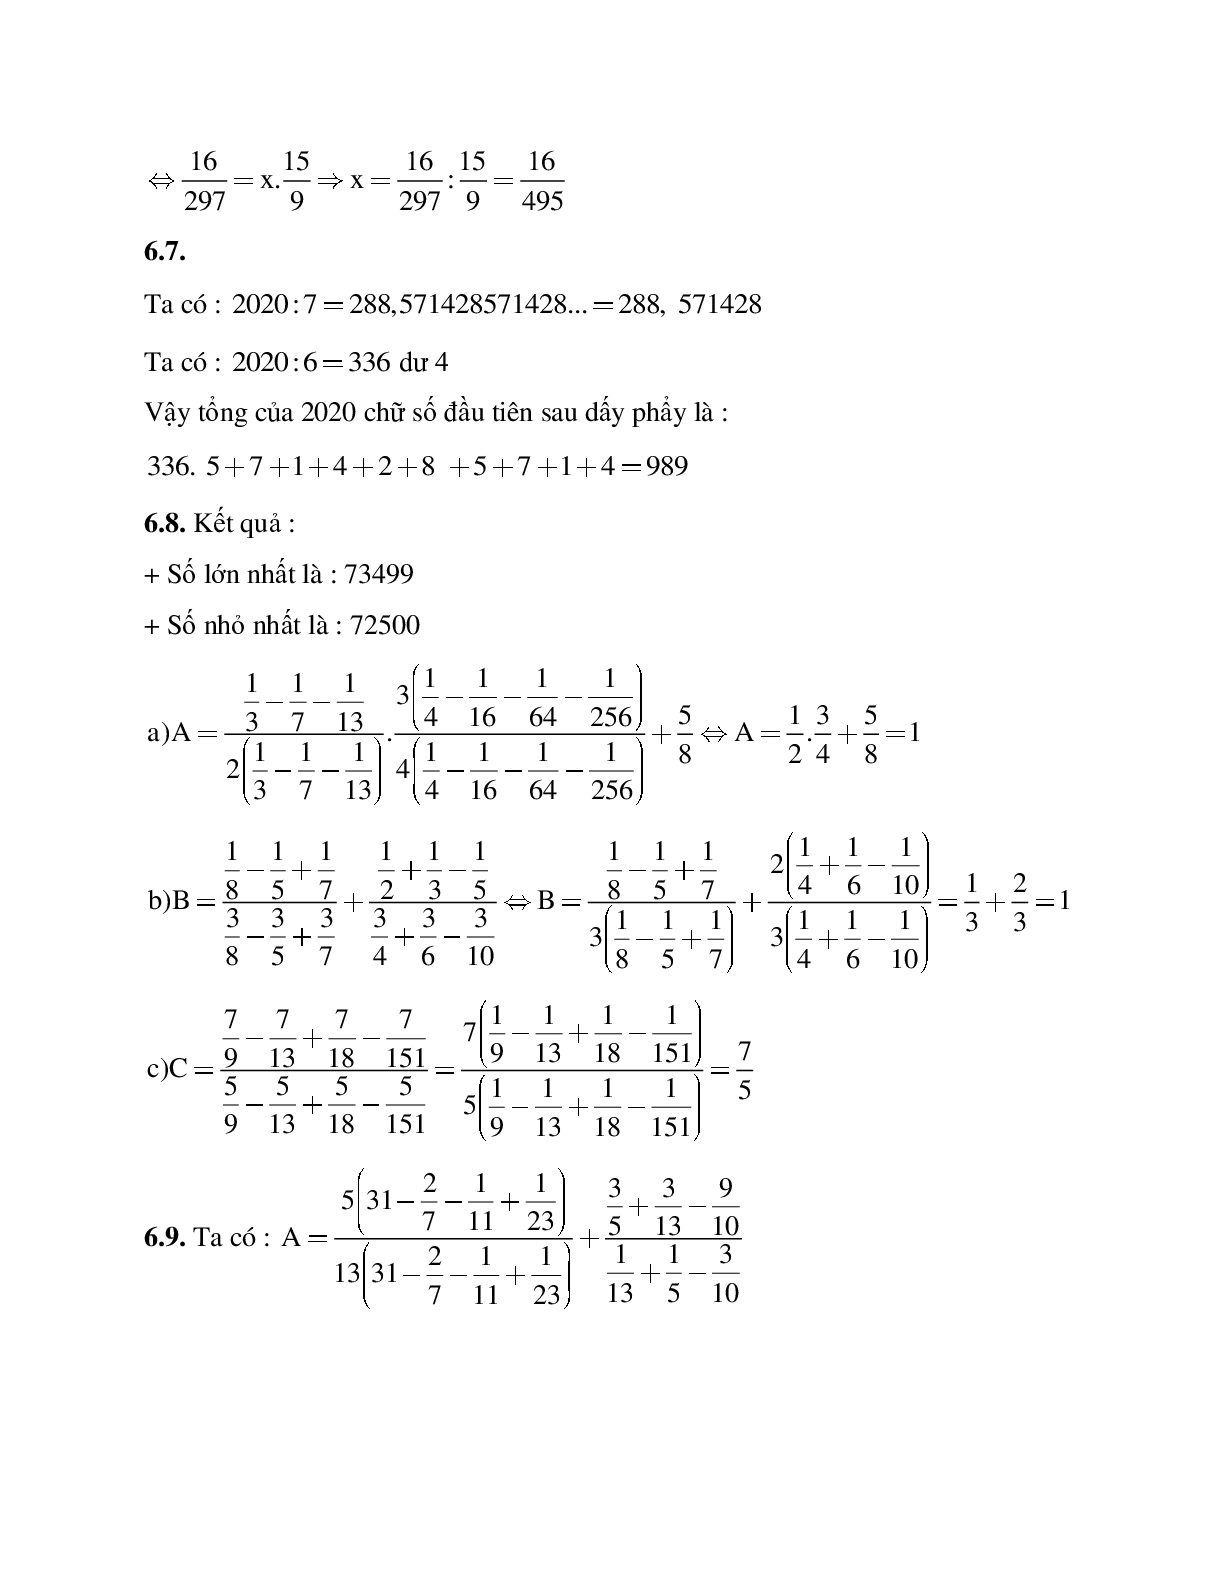 Hệ thống bài tập về Số thập phân hữu hạn - Số thập phân vô hạn tuần hoàn - Làm tròn số có lời giải (trang 9)